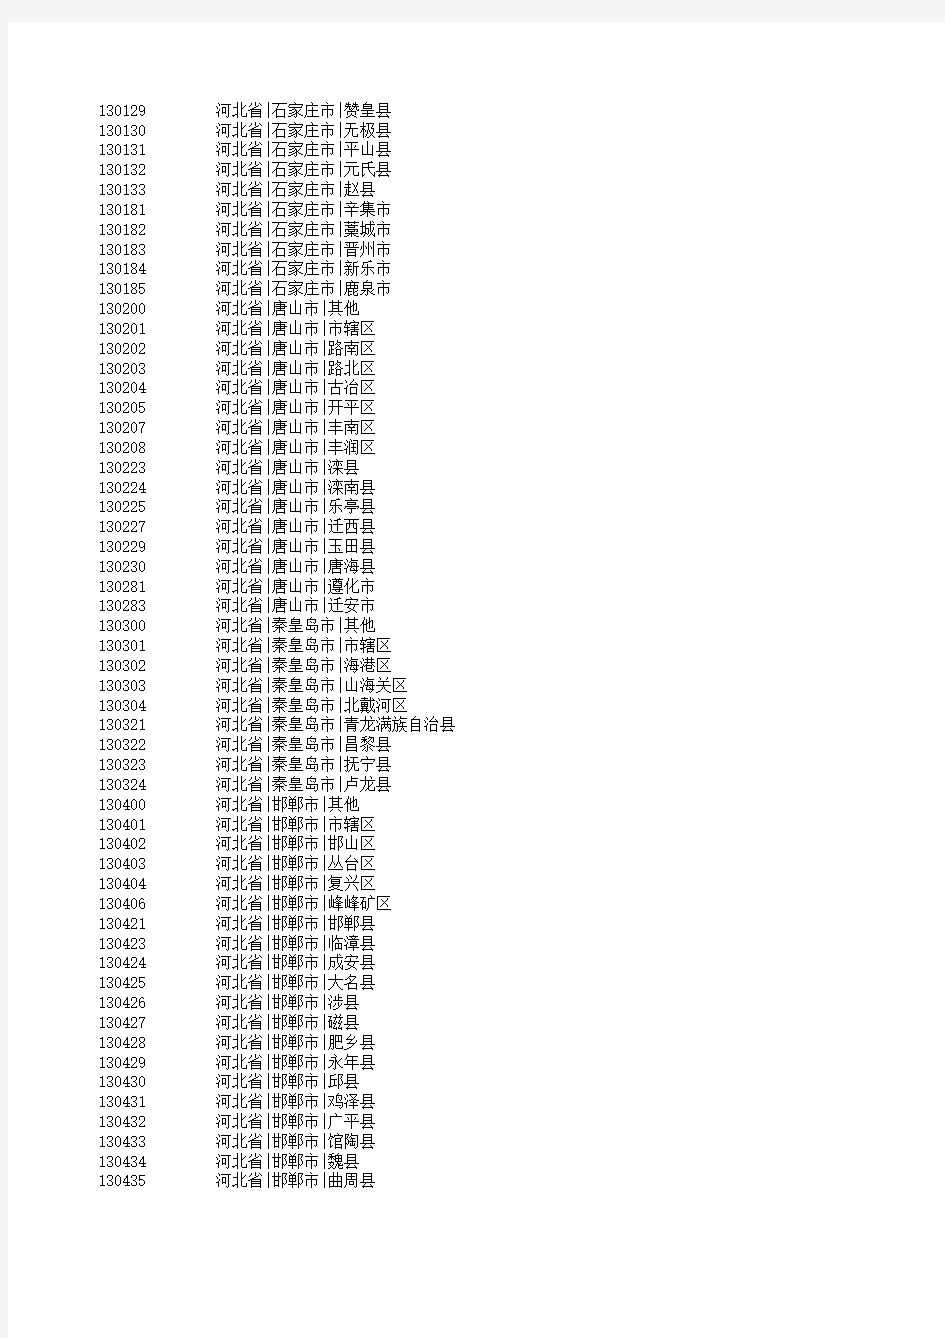 2013年-全国行政区划分代码表